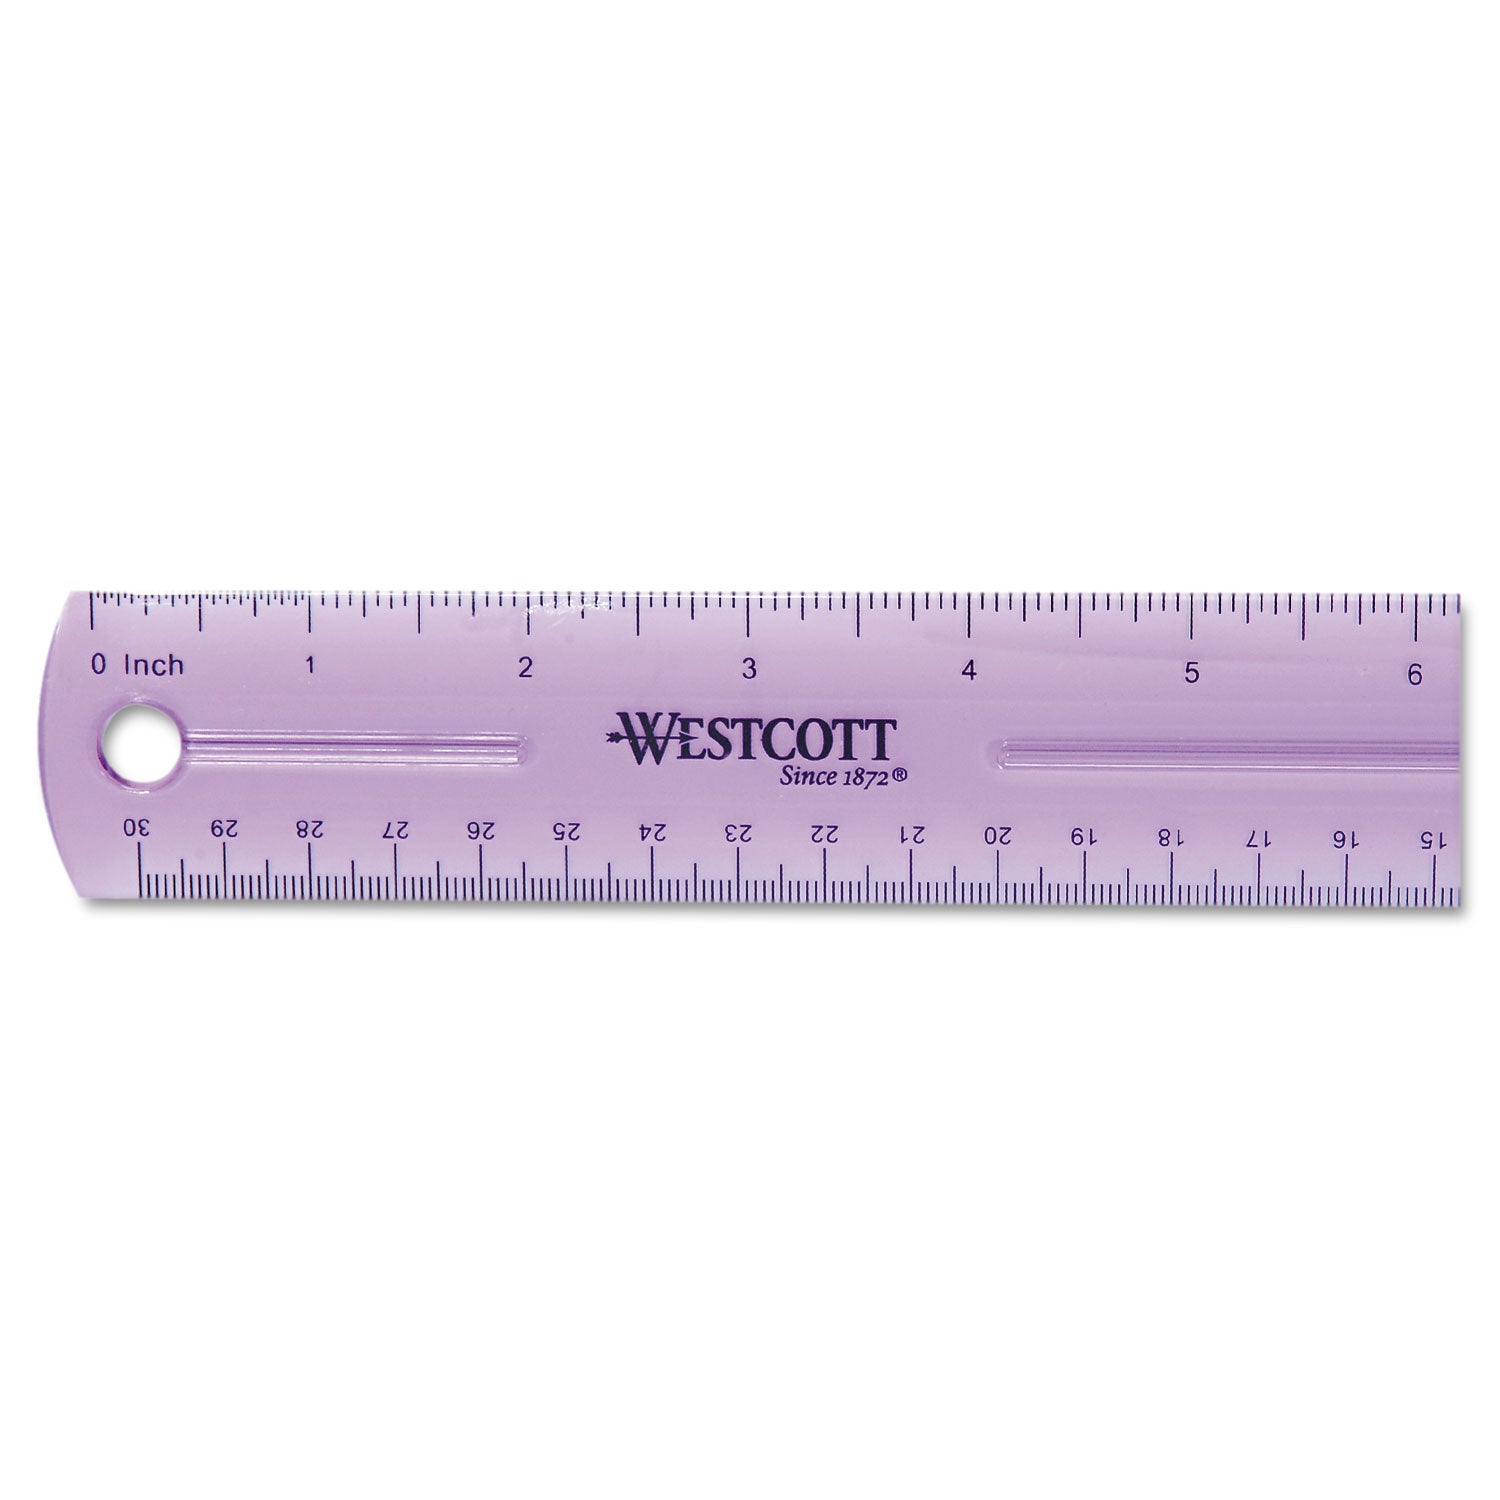 12" Jewel Colored Ruler, Standard/Metric, Plastic - 